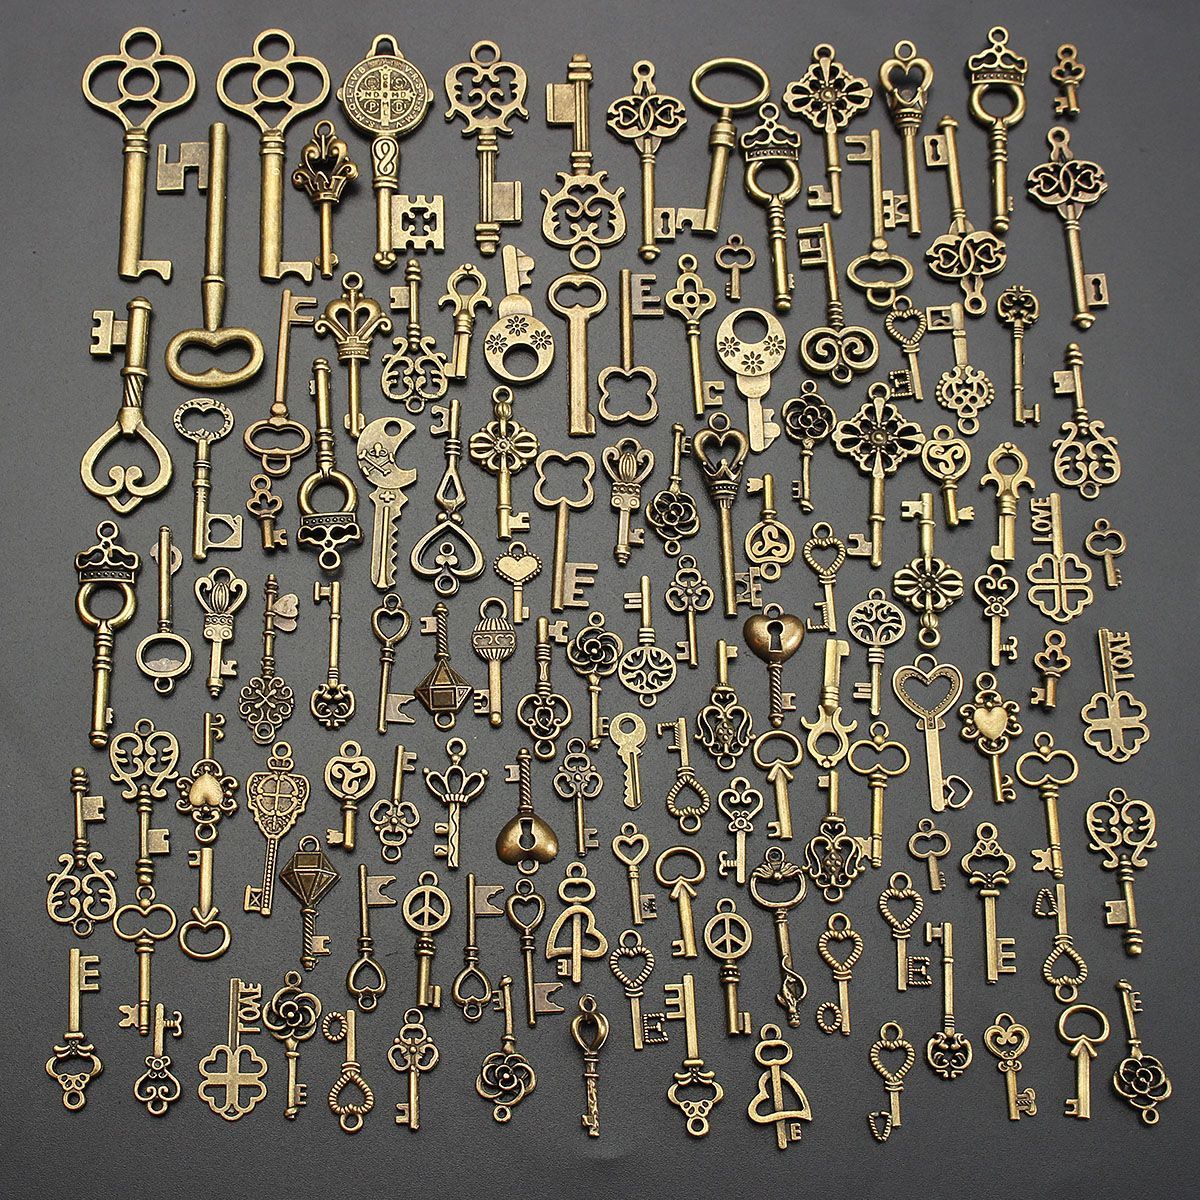 125Pcs-Vintage-Bronze-Key-For-Pendant-Necklace-Bracelet-DIY-Handmade-Accessories-Decoration-1192644